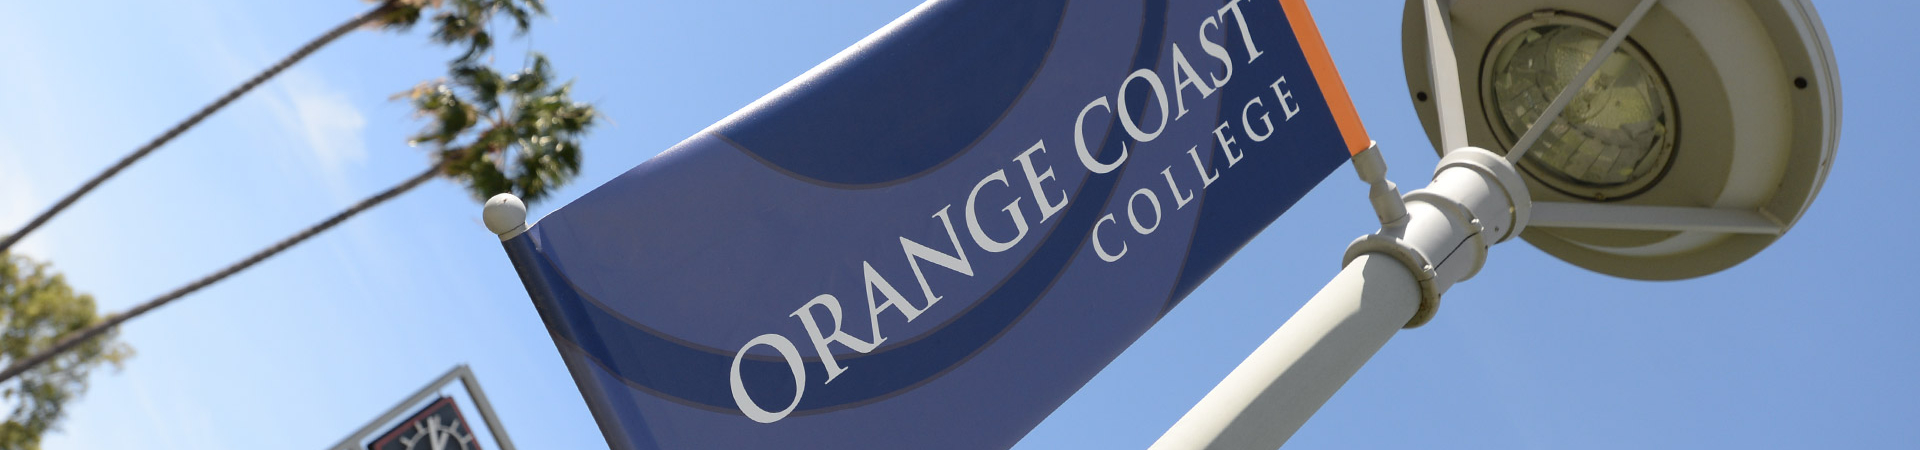 첥Ƶ Coast College spirt banner hanging on a lamp post.